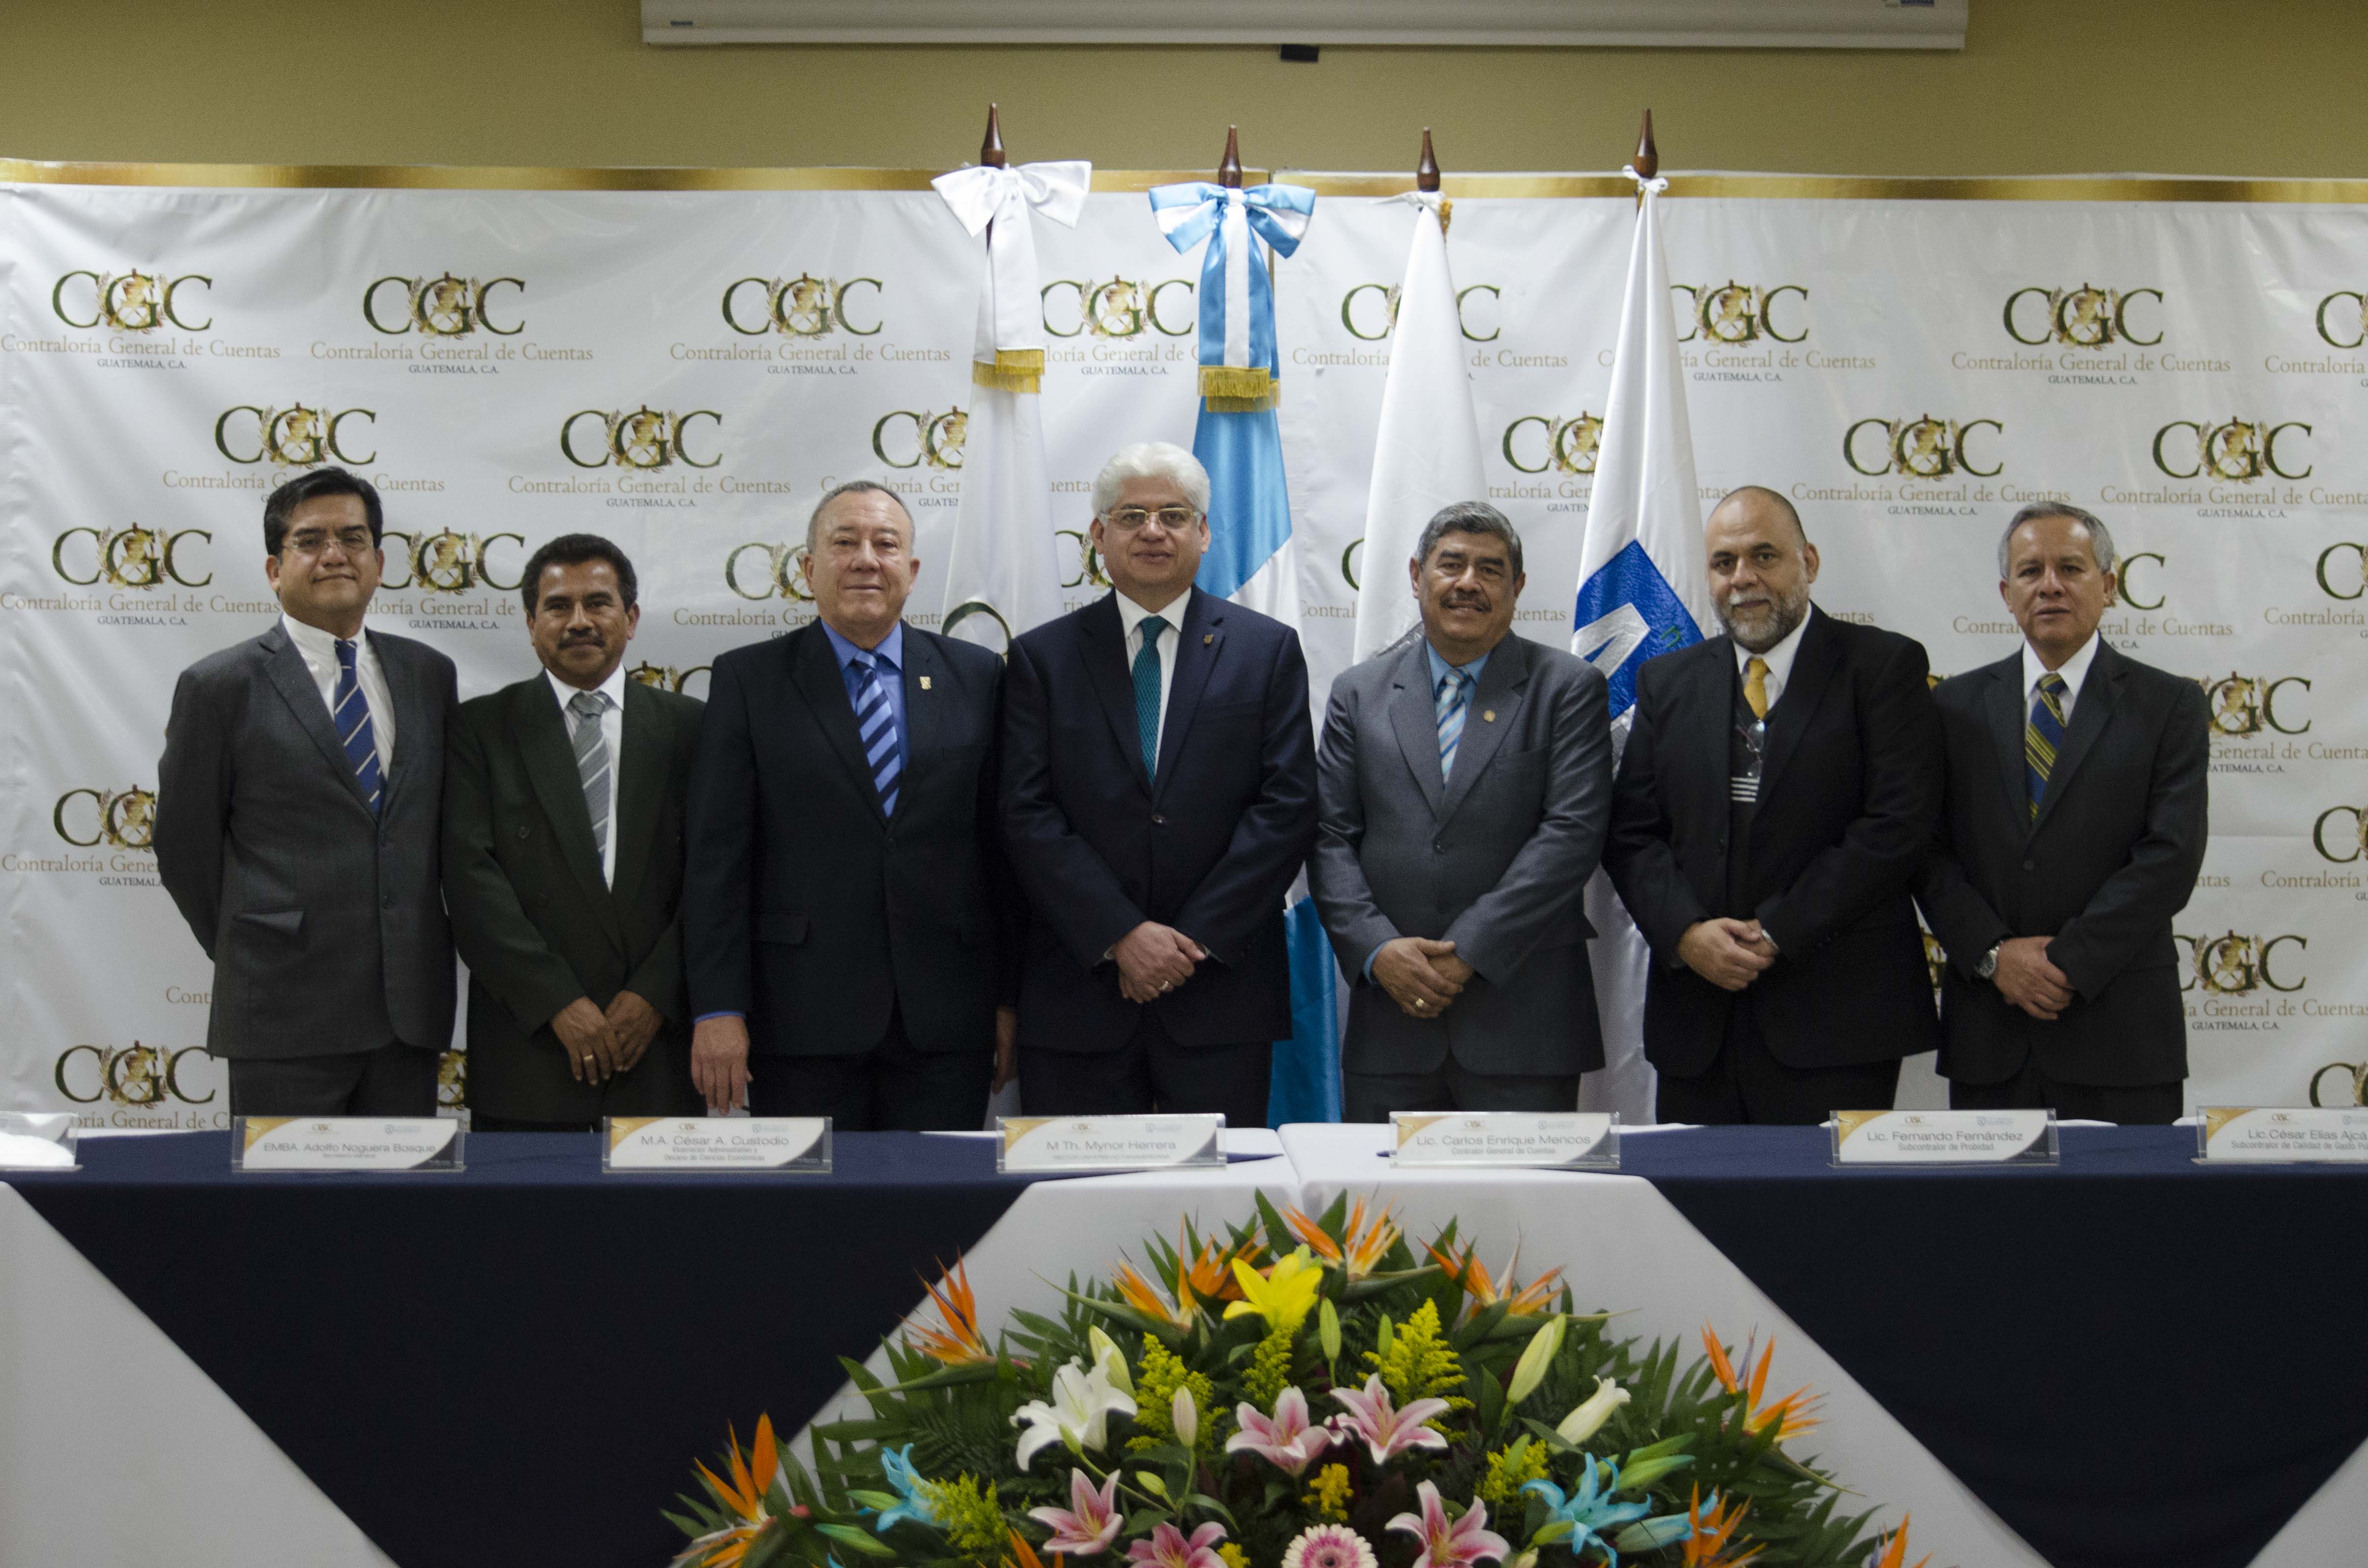 Contraloría General de Cuentas firma convenio con Universidad Panamericana de Guatemala